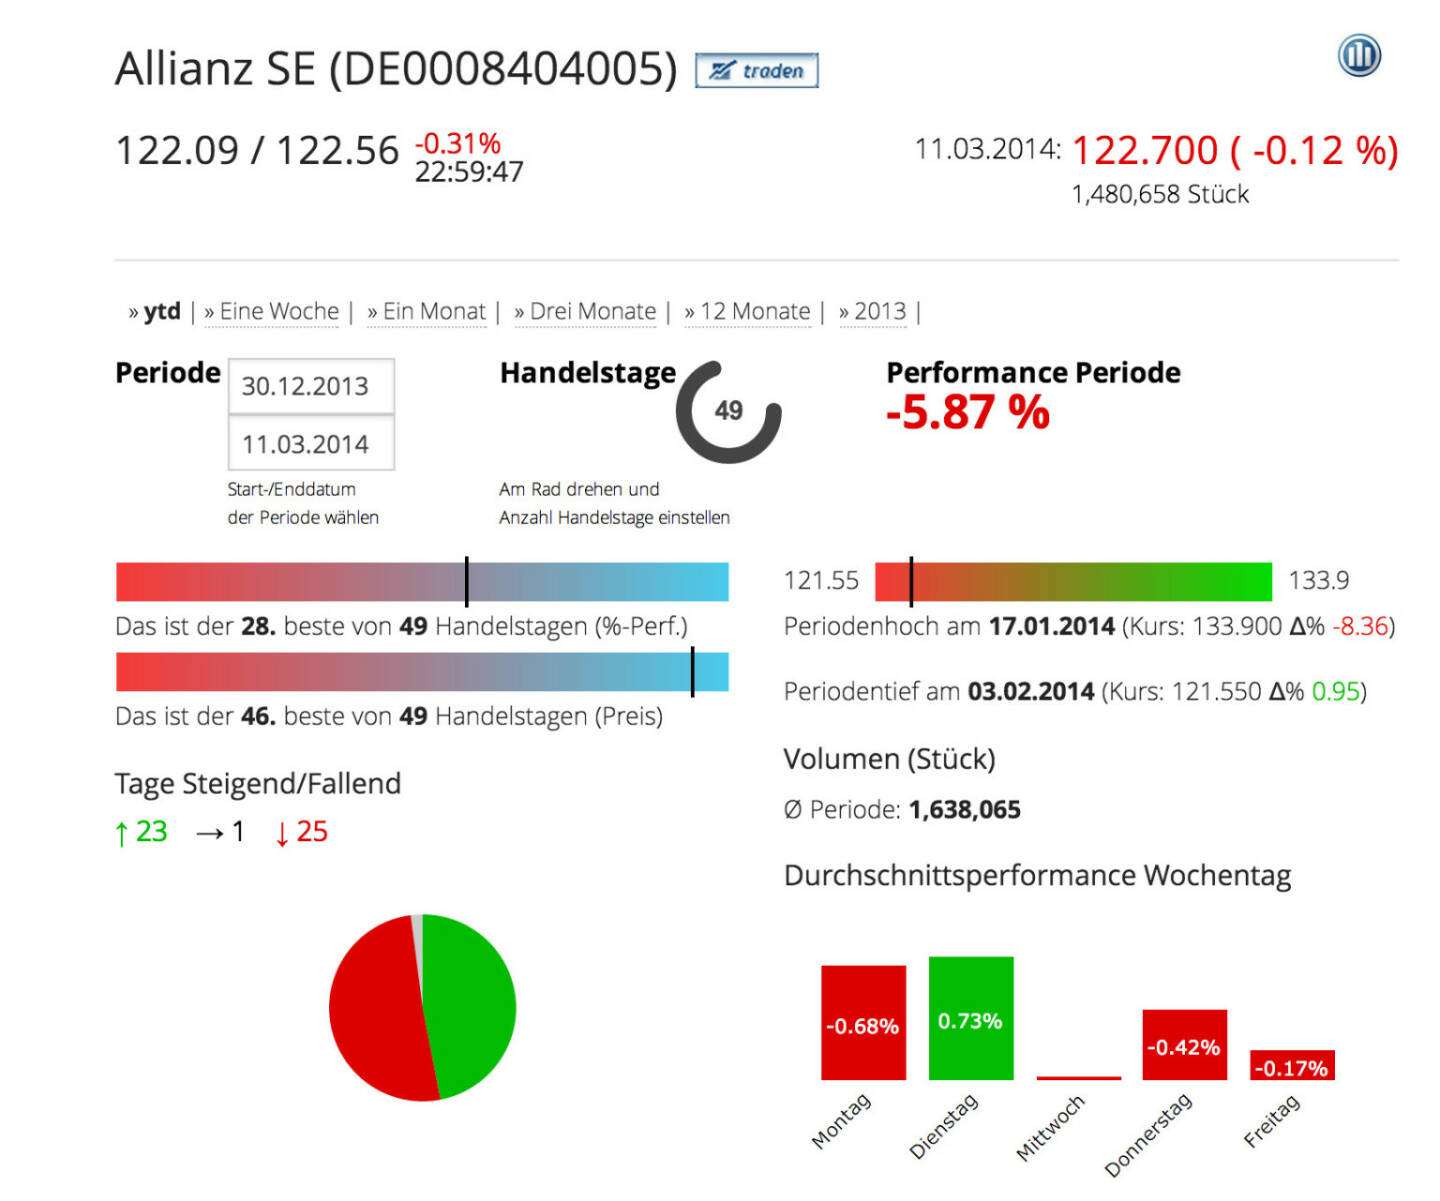 Die Allianz SE im Börse Social Network, http://boerse-social.com/launch/aktie/allianz_se